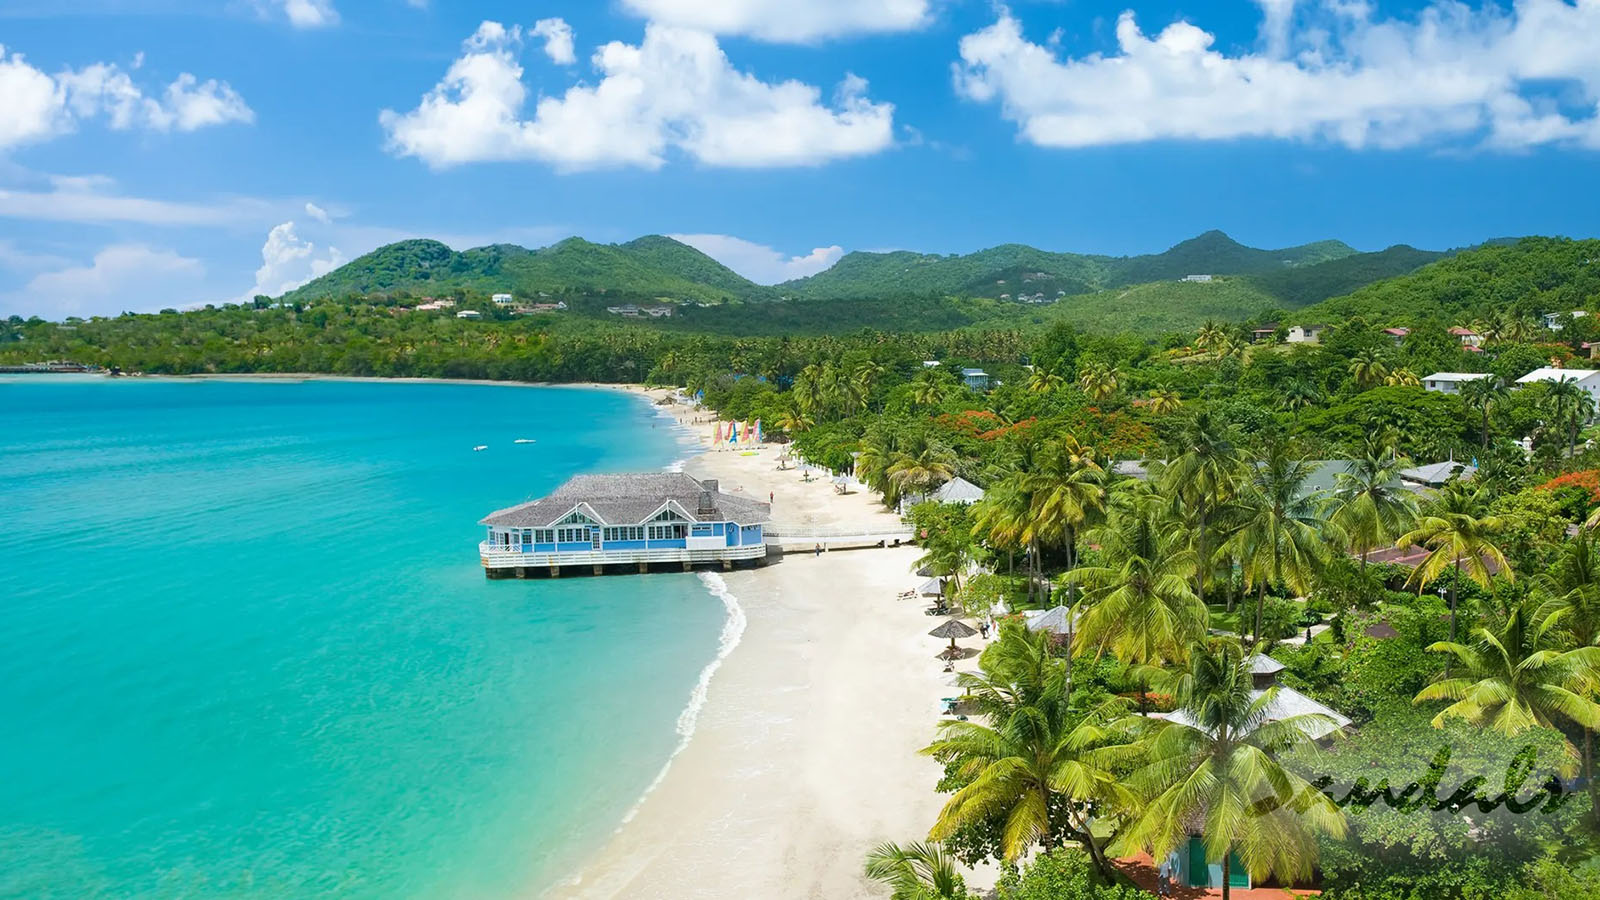 Sandals Halcyon Beach St Lucia | WestJet official site